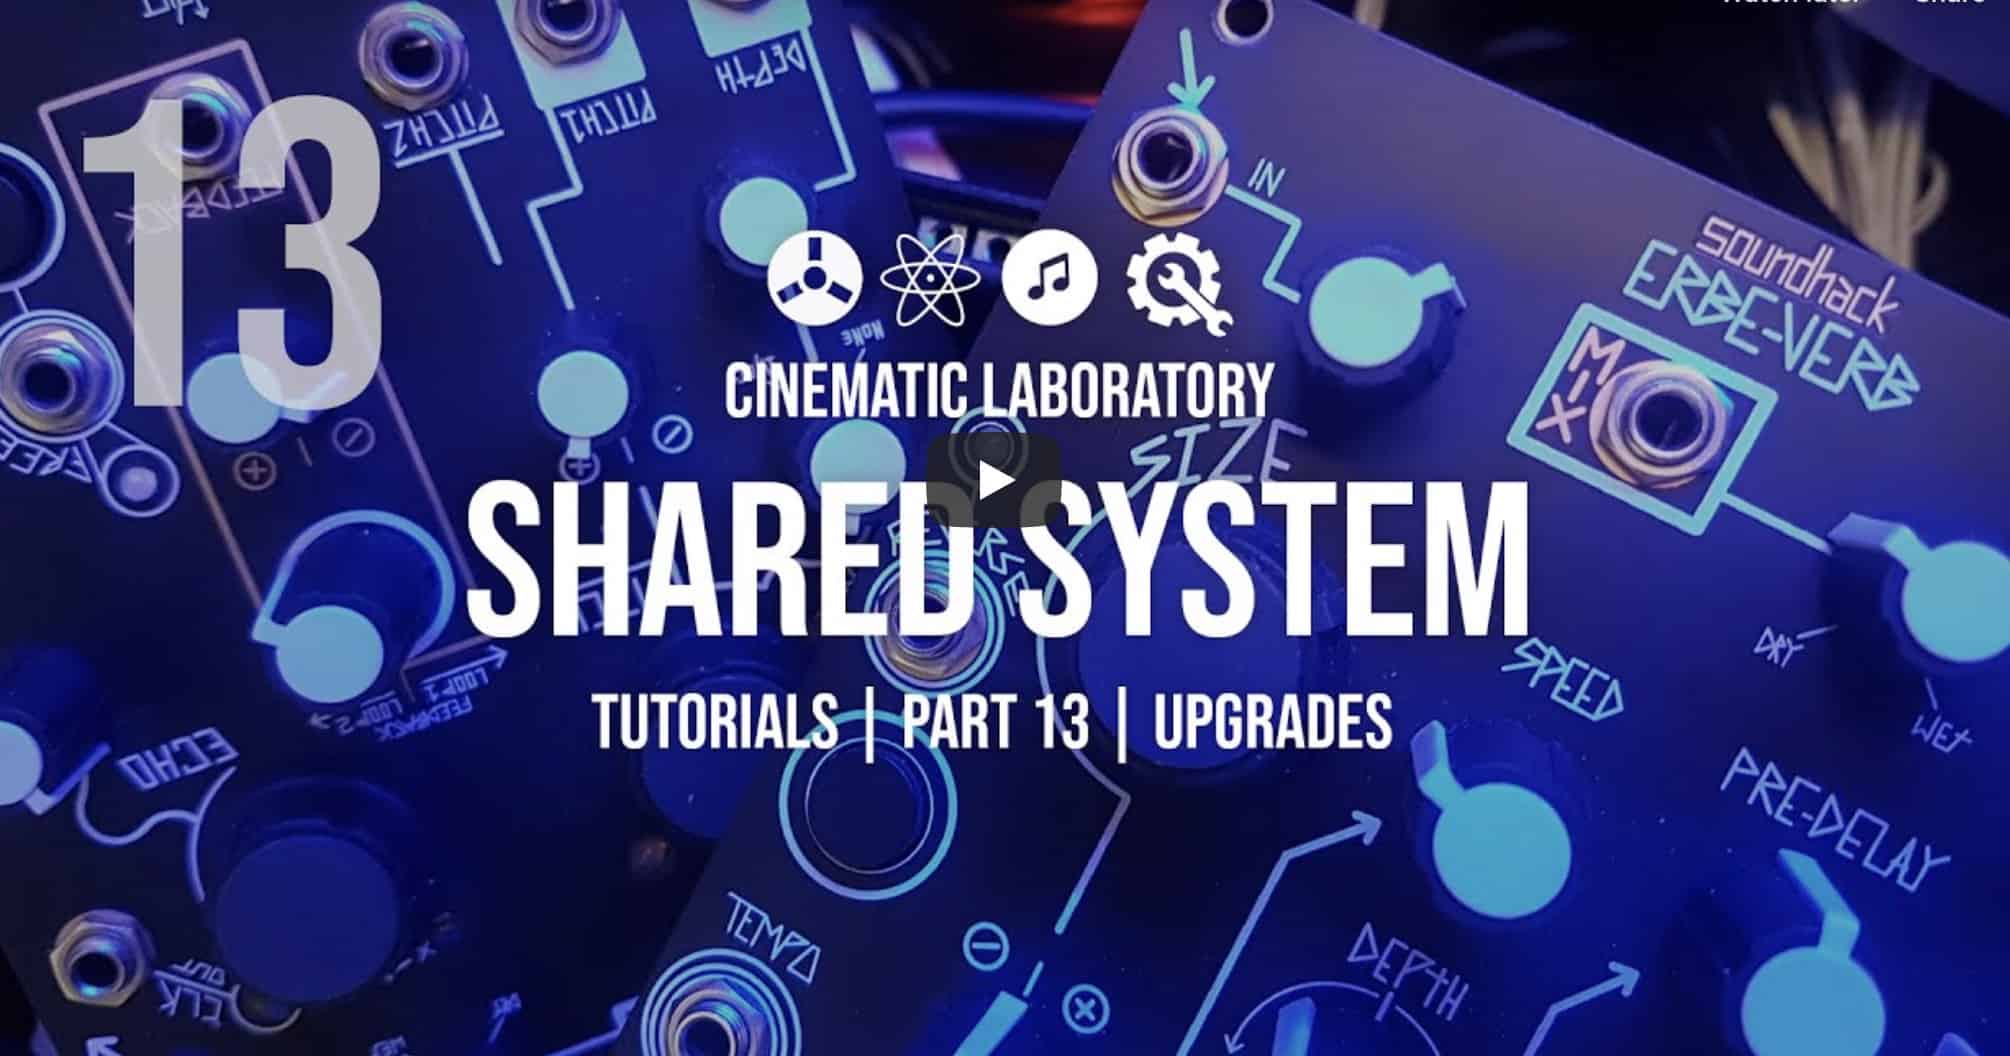 Shared System Tutorials Part 13 Upgrades